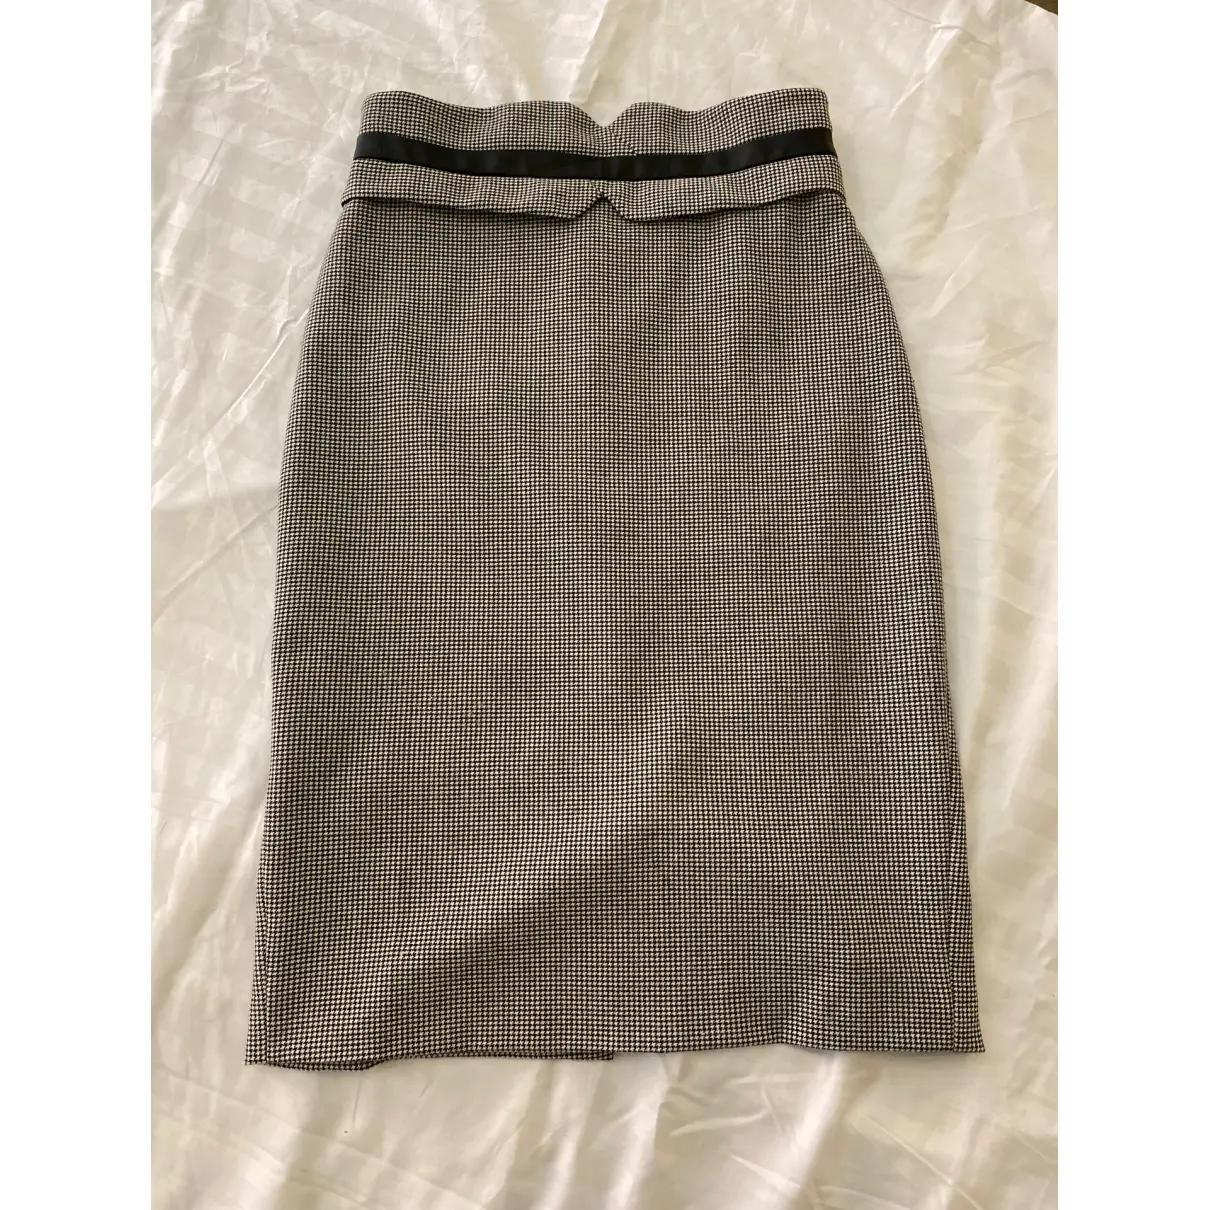 Buy Karen Millen Skirt suit online